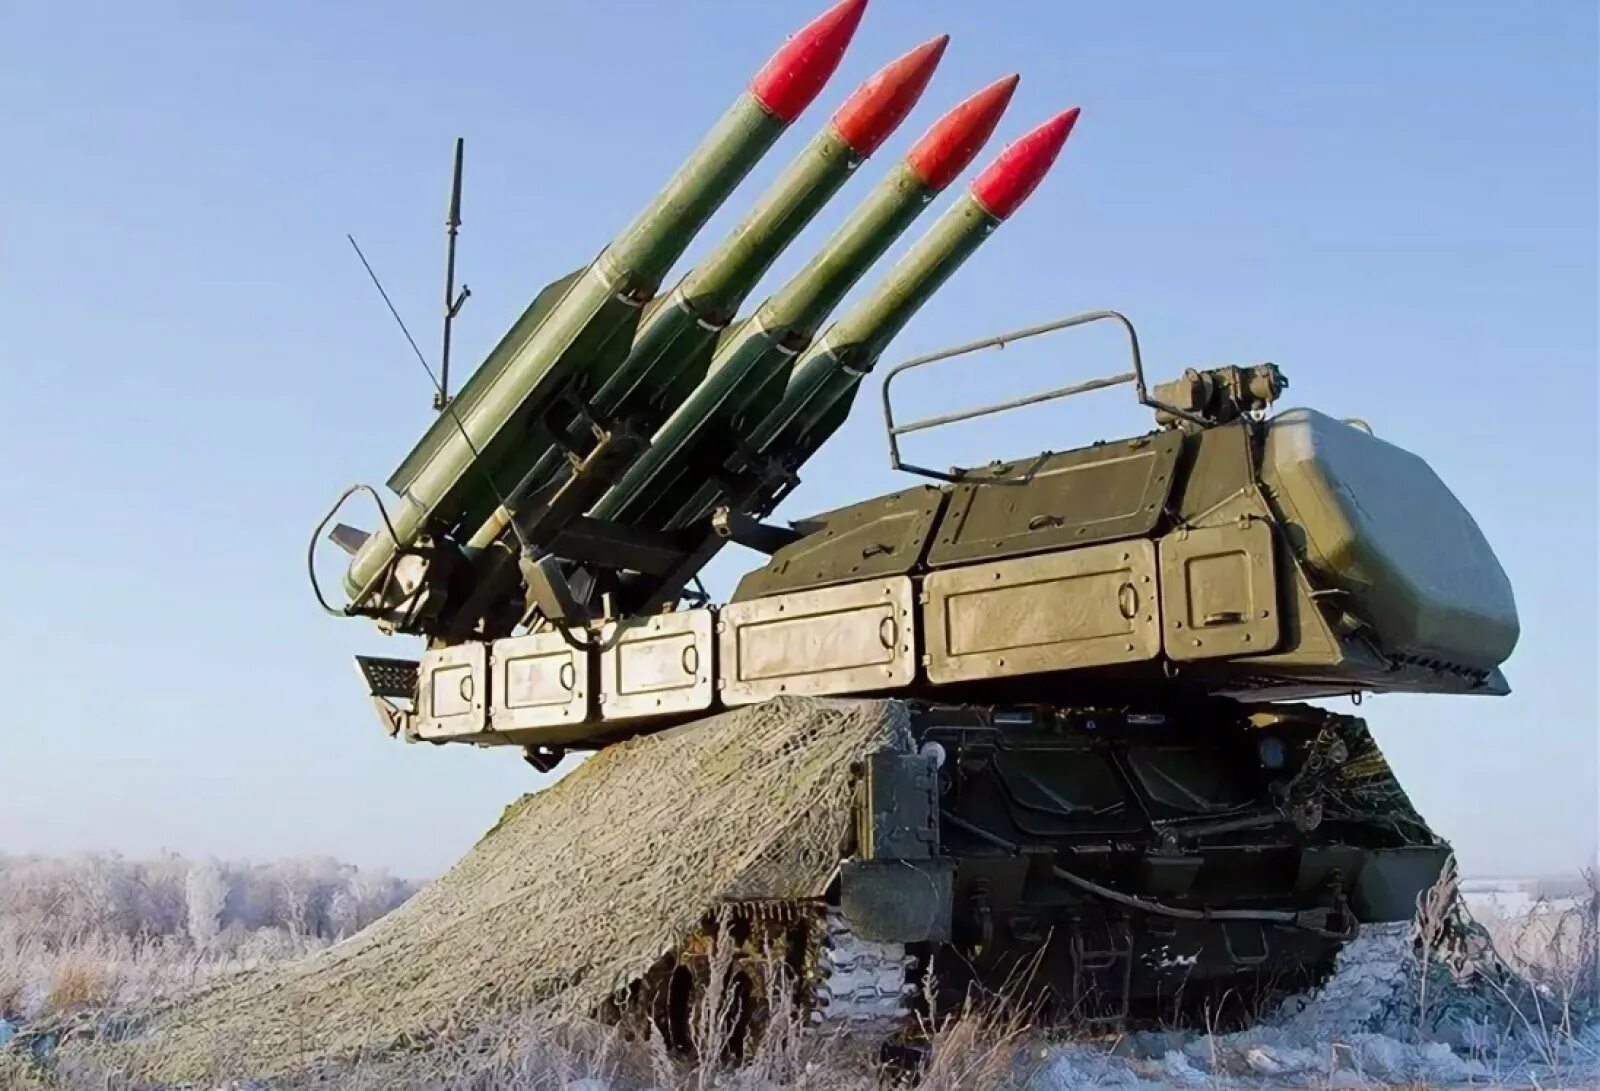 Зенитно ракетные войска вооружены. 9к317 «бук-м2». ЗРК 9к317 бук-м2. Бук-м2э»-«Урал». Зенитный ракетный комплекс бук-м2э.